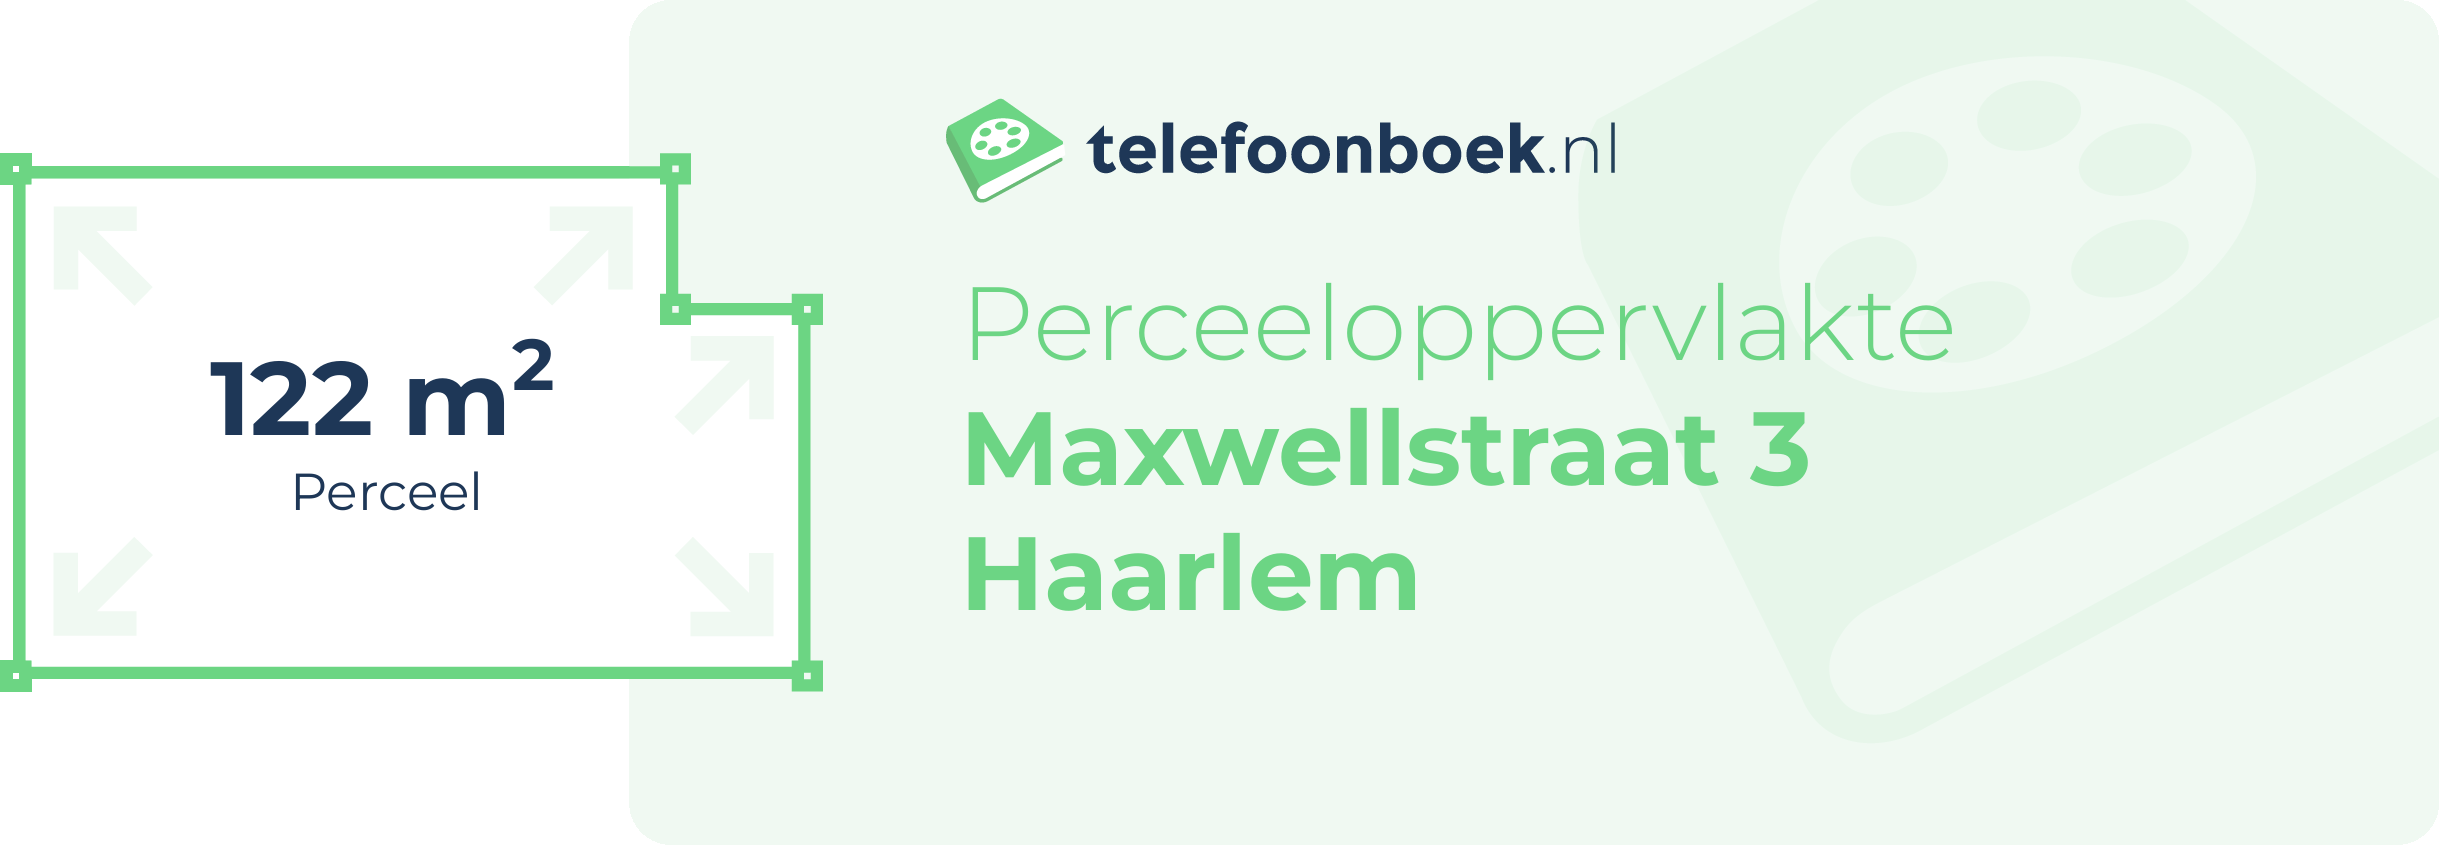 Perceeloppervlakte Maxwellstraat 3 Haarlem